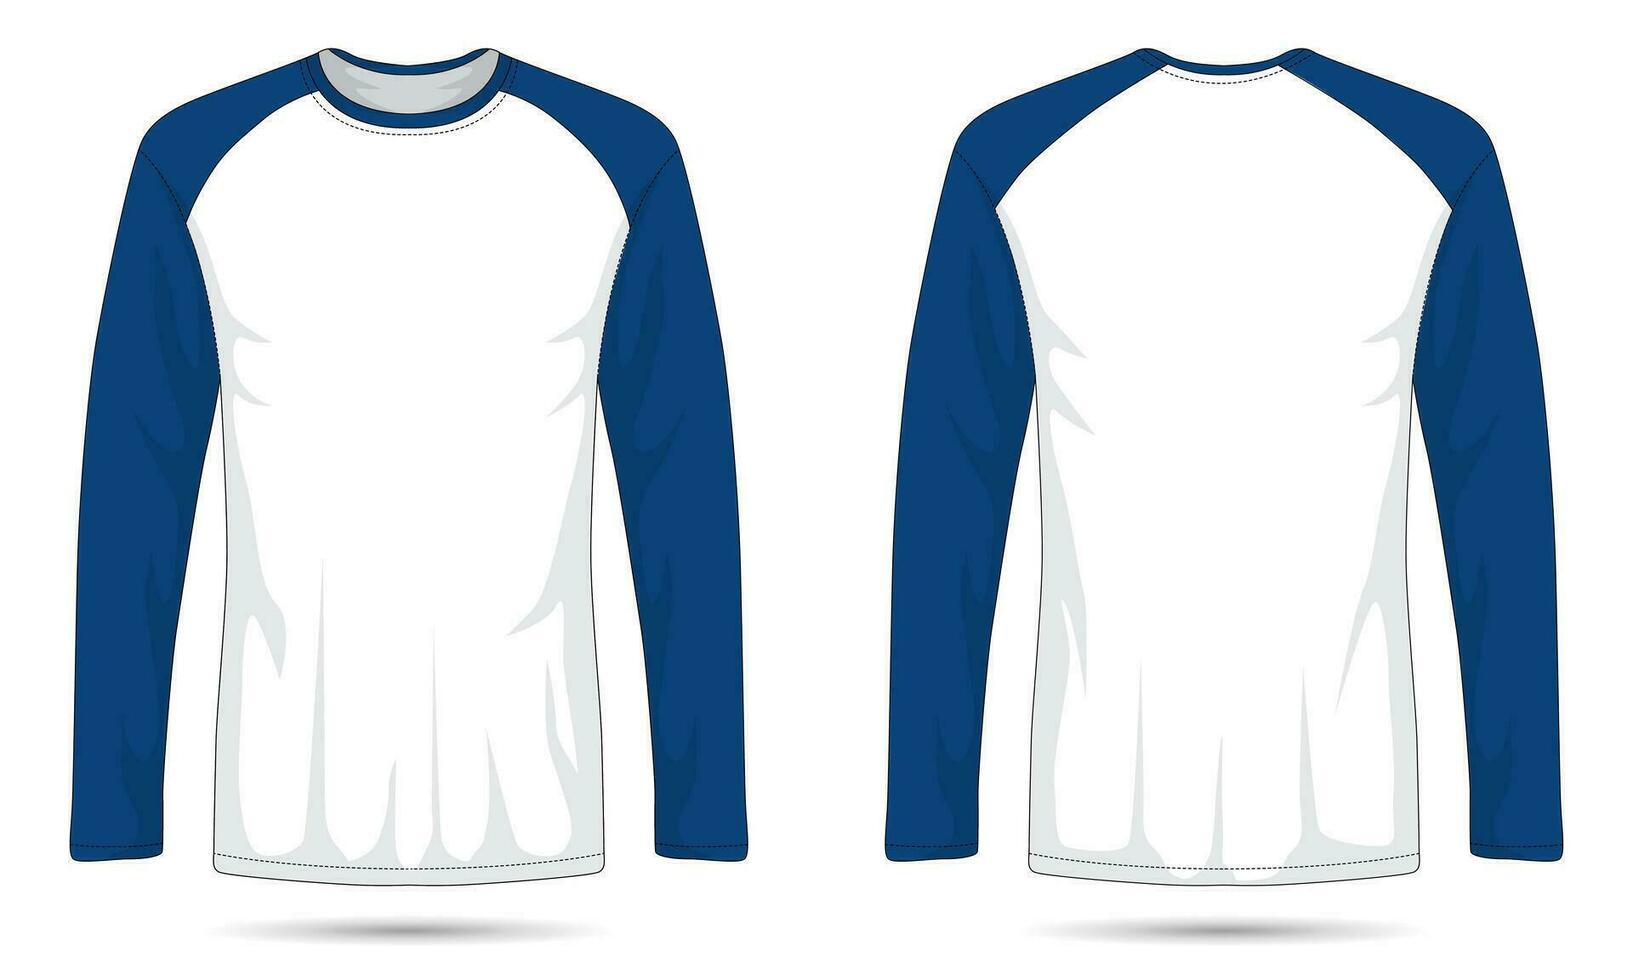 Raglan long sleeve t-shirt mockup front and back view vector